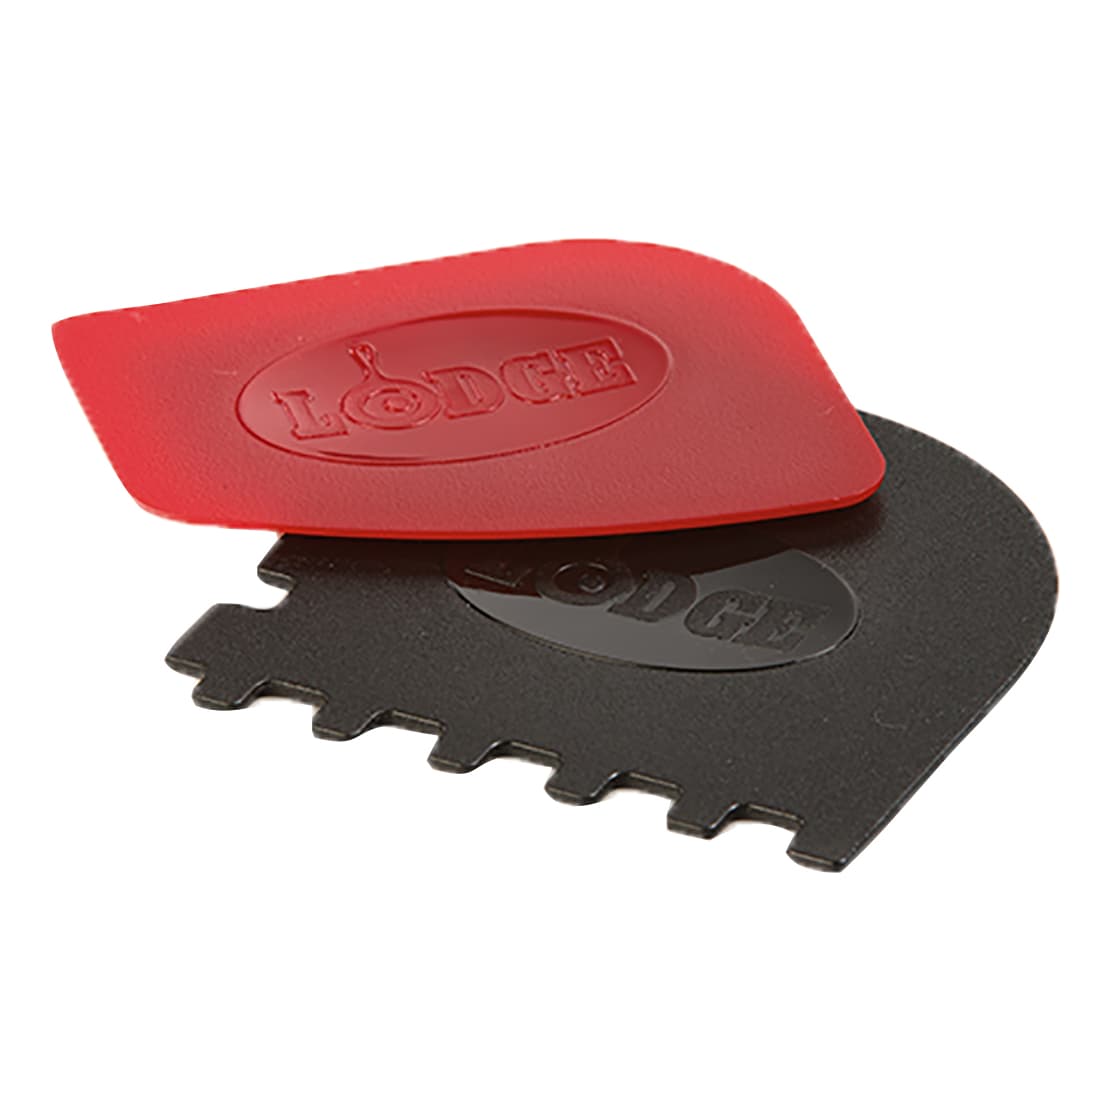 Lodge® Red & Black Pan Scraper Set